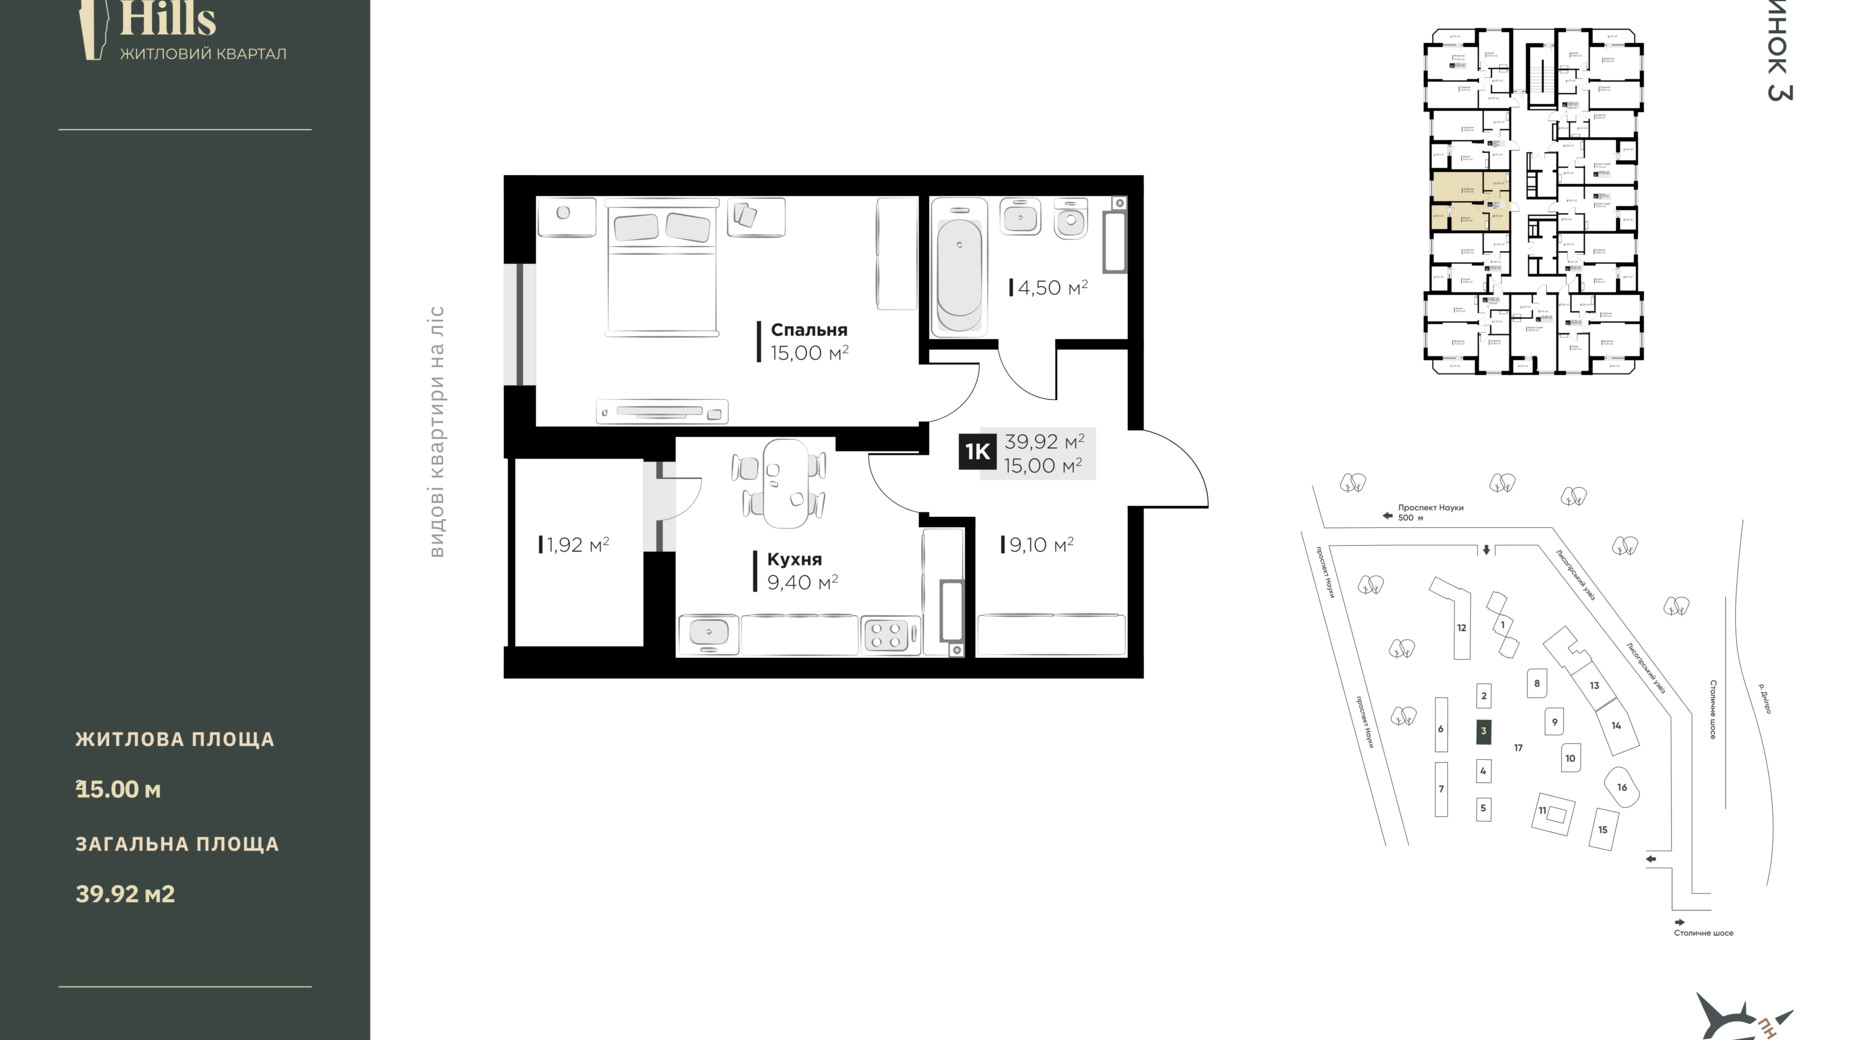 Планировка 1-комнатной квартиры в ЖК Central Hills 39.92 м², фото 592770